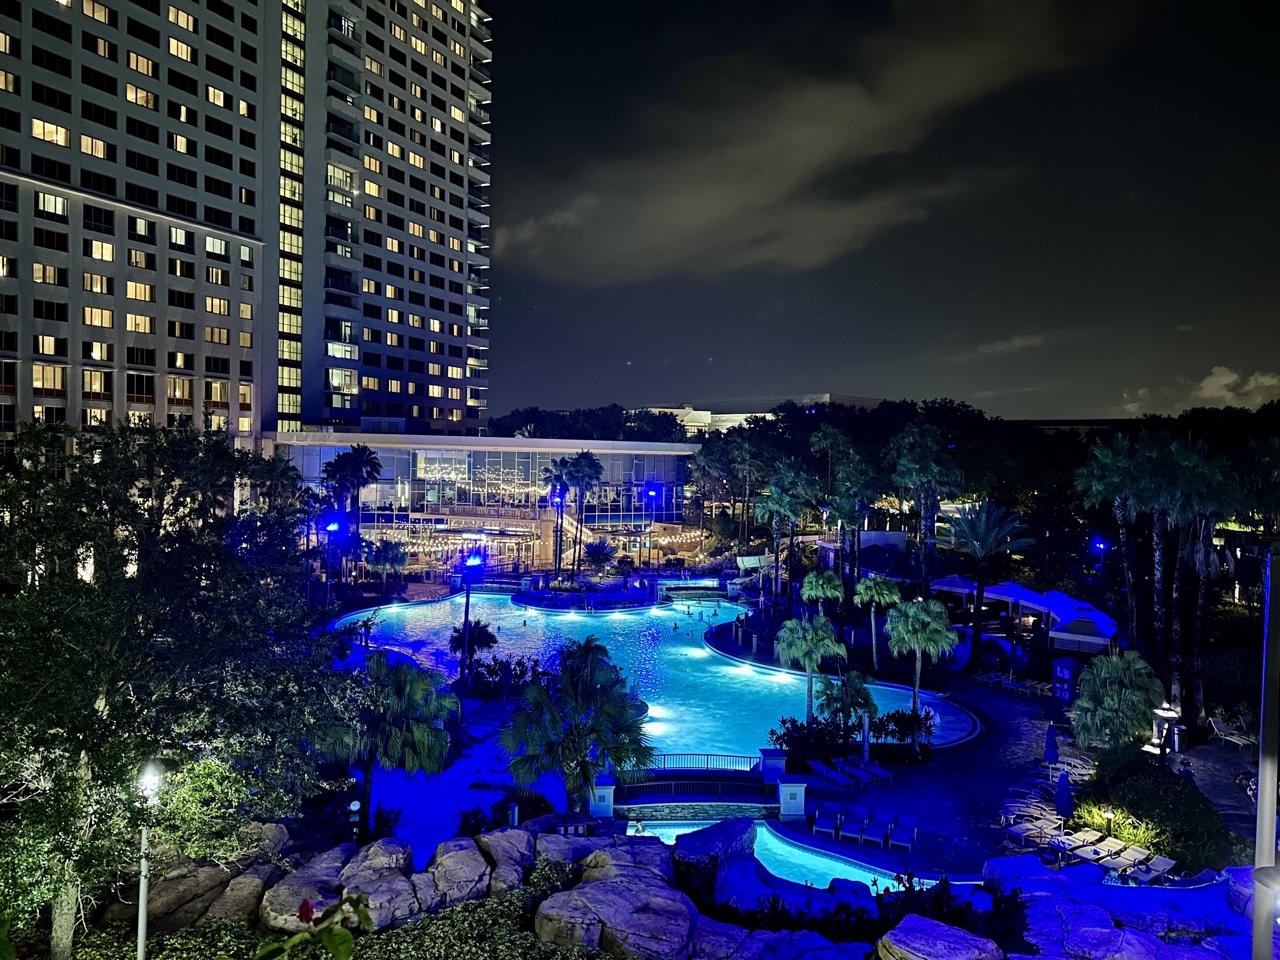 Hyatt Regency Orlando pool at night